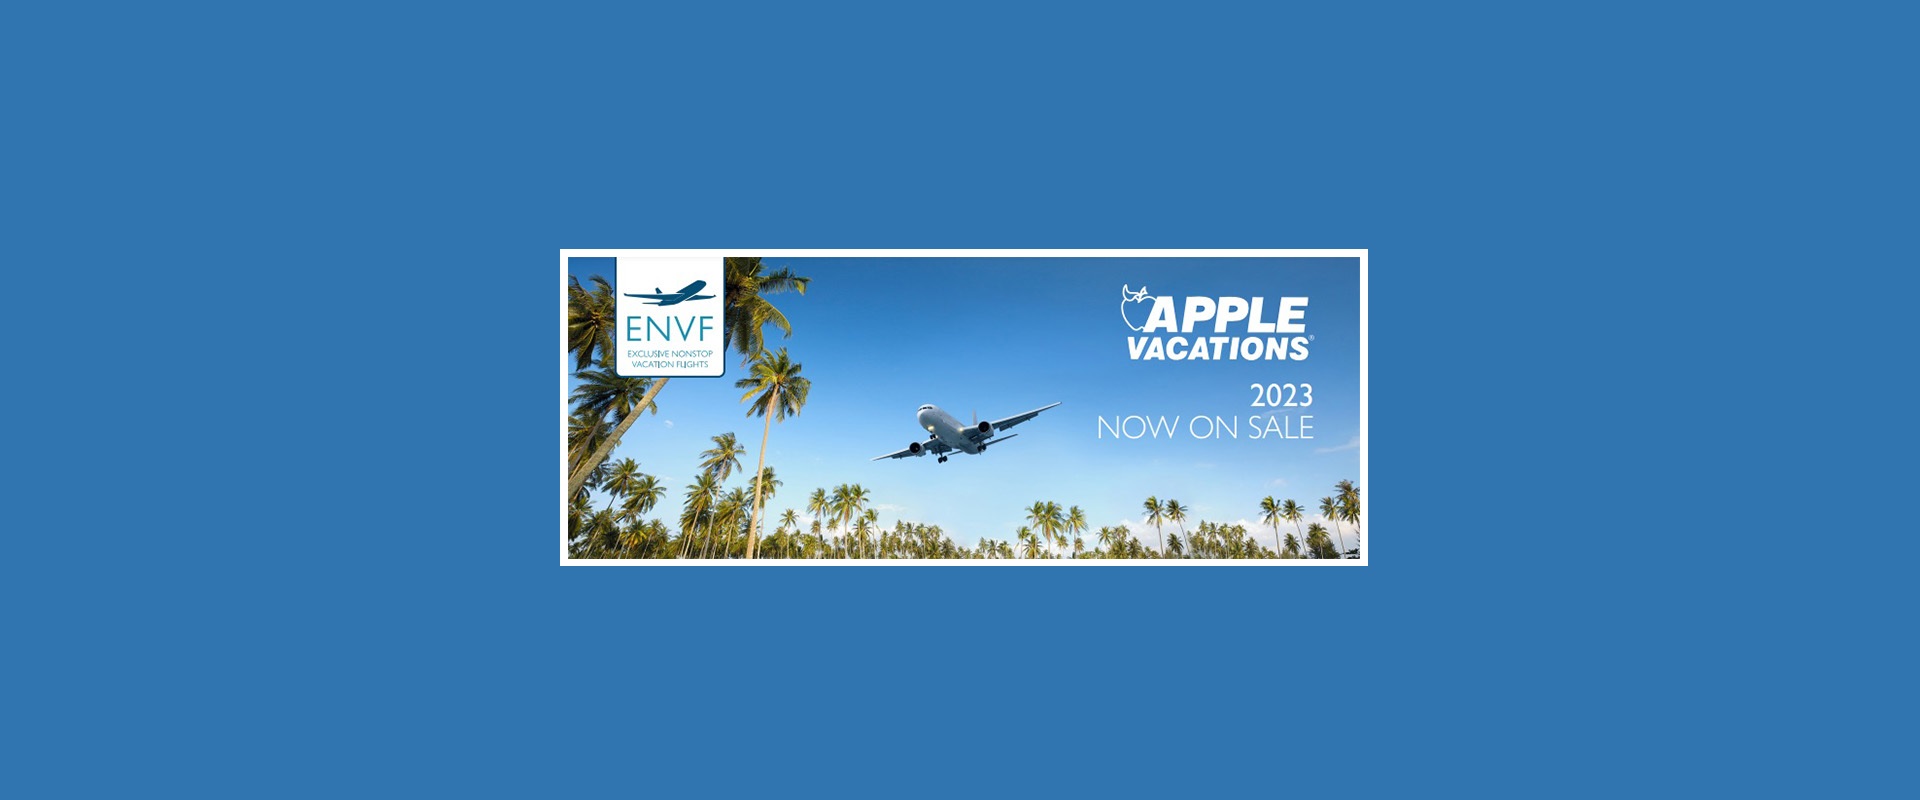 Apple-Vacations-2023-Excluisve-Non-Stop-Vacation-Flights-Charter-Schedule-Header